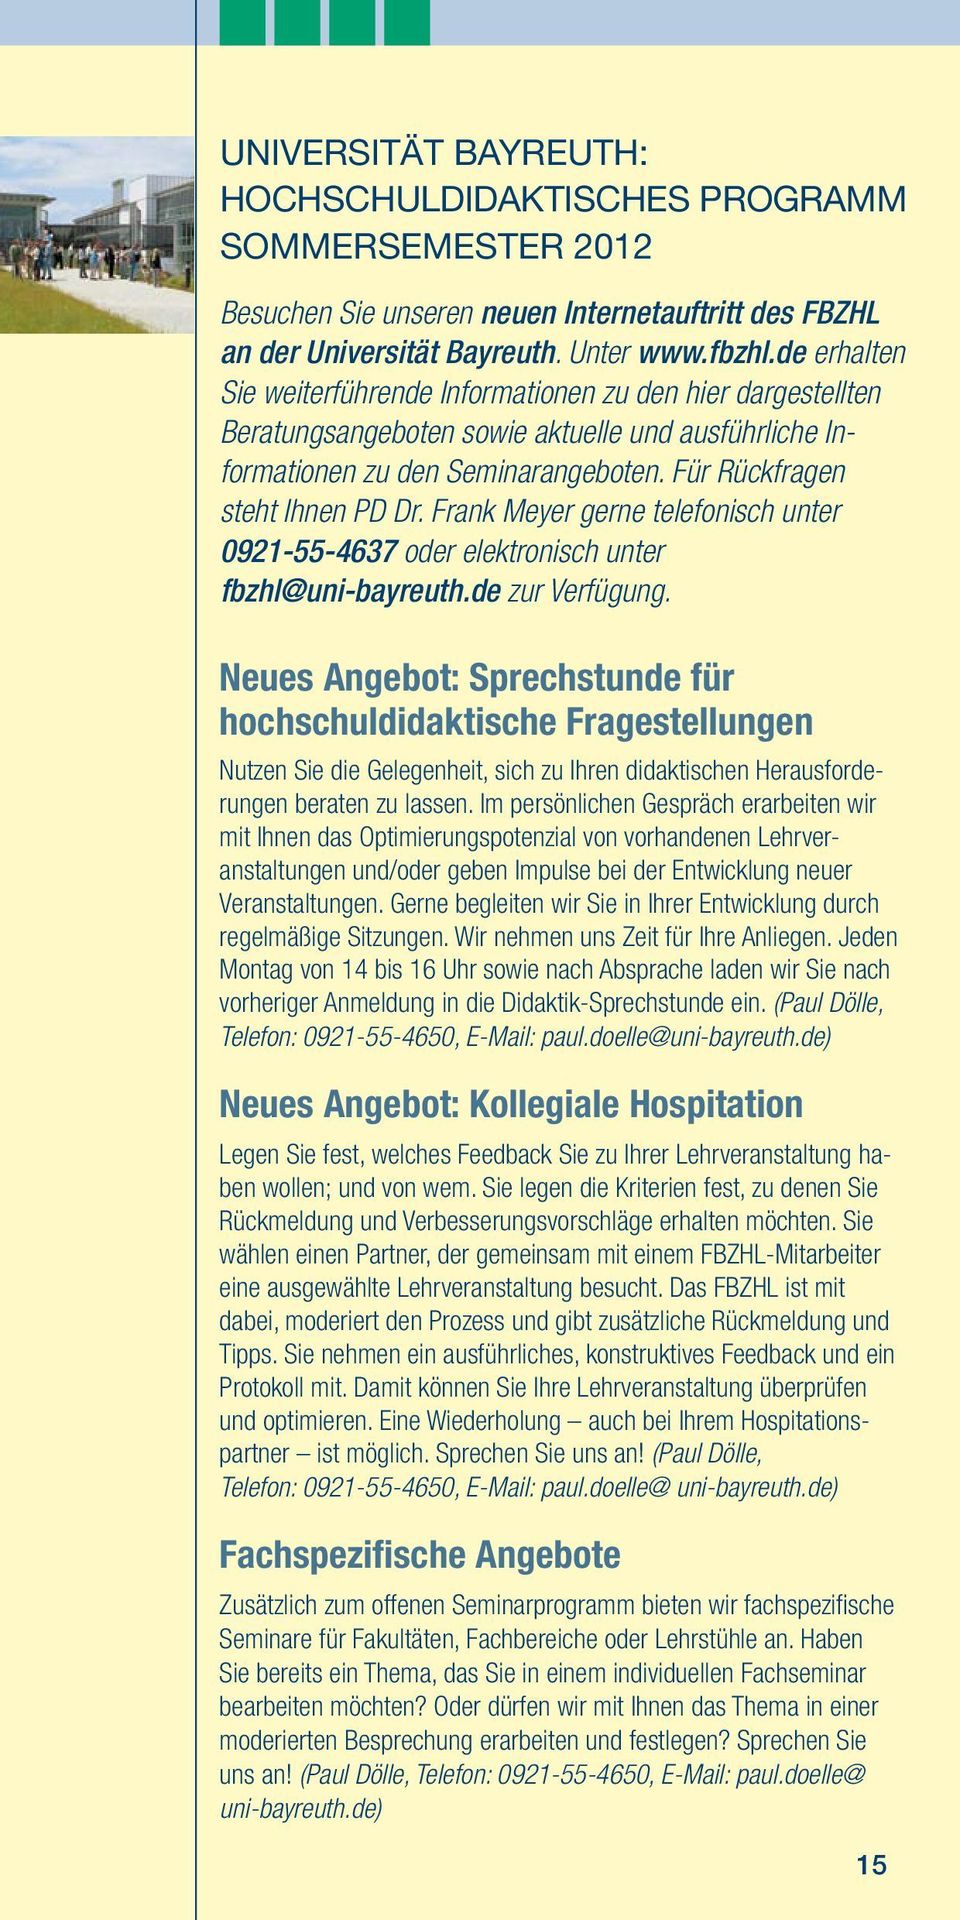 Frank Meyer gerne telefonisch unter 0921-55-4637 oder elektronisch unter fbzhl@uni-bayreuth.de zur Verfügung.